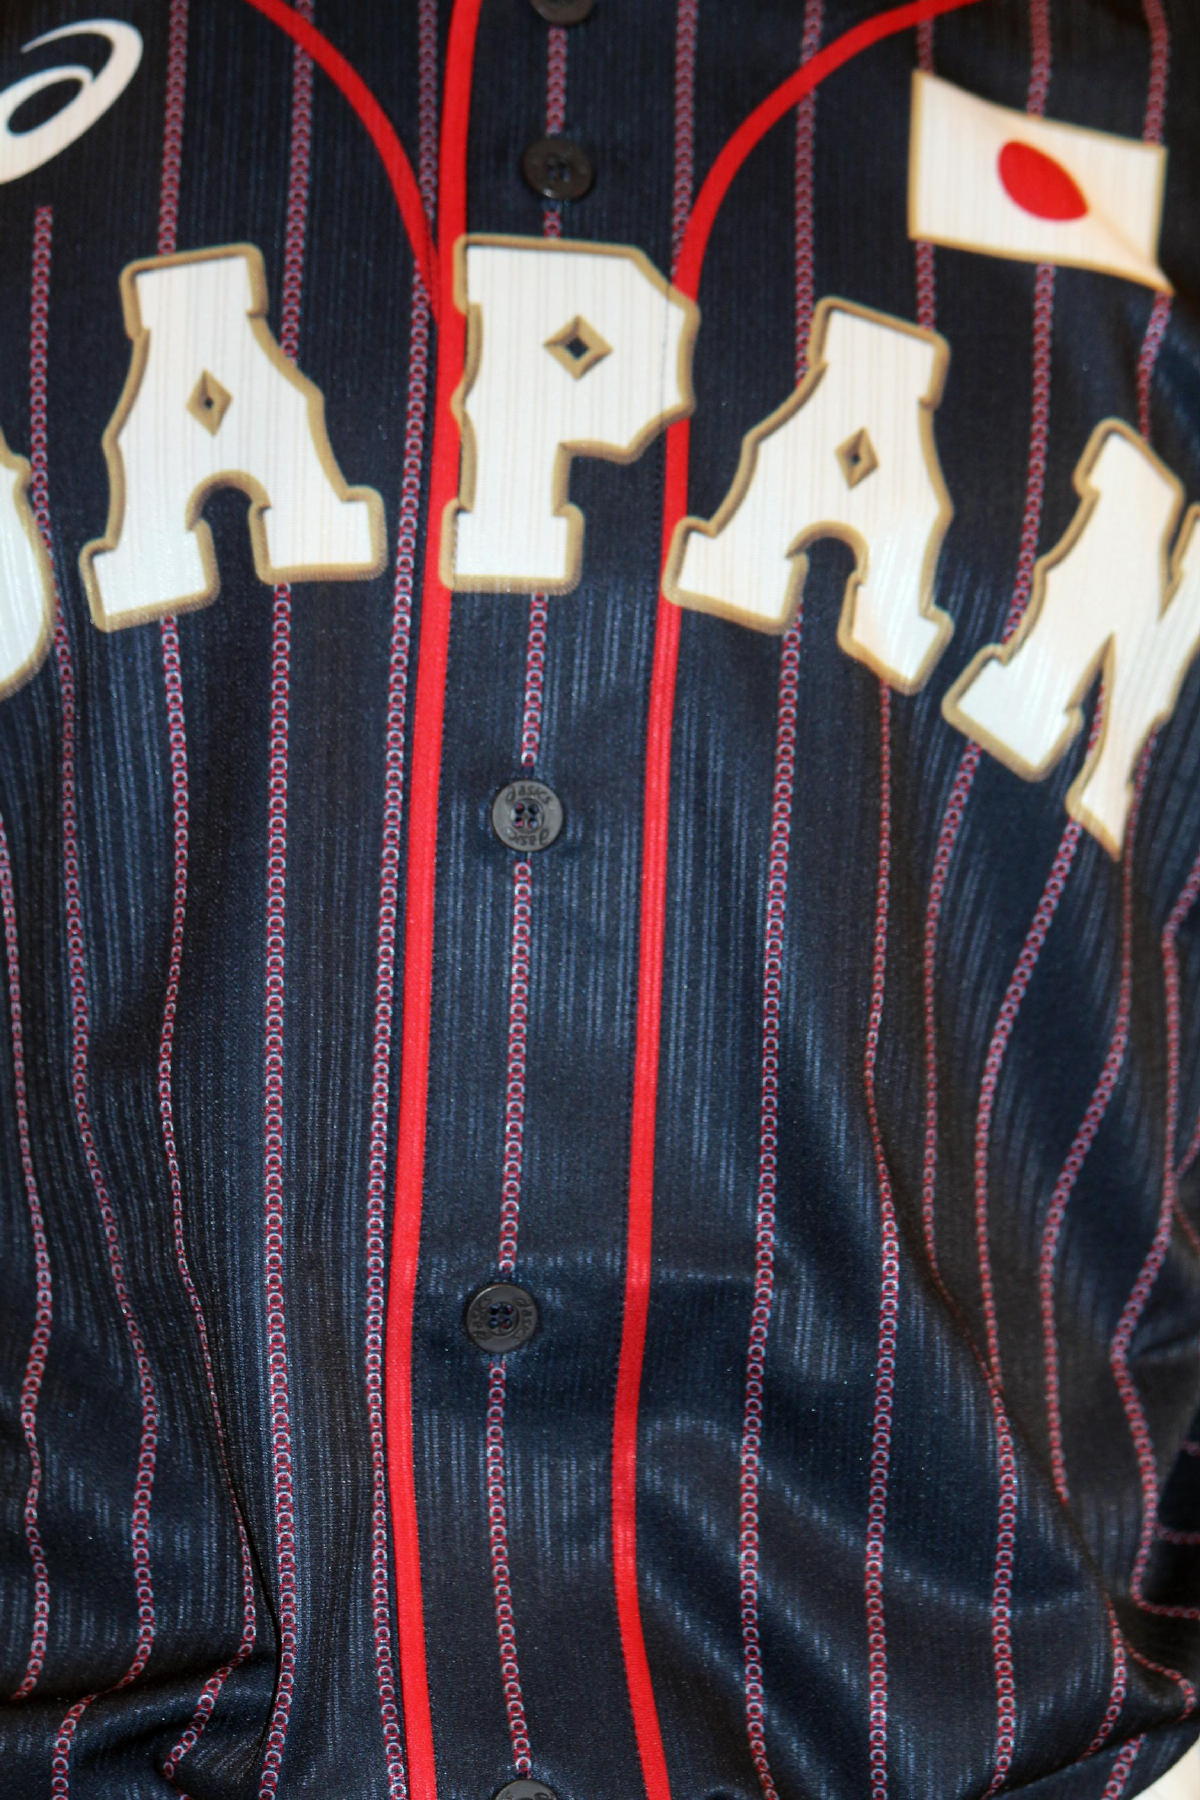 野球日本代表 侍ジャパン 新ユニフォームを発表日本の伝統的な色と柄を取り入れたデザイン Zoom Up Collection